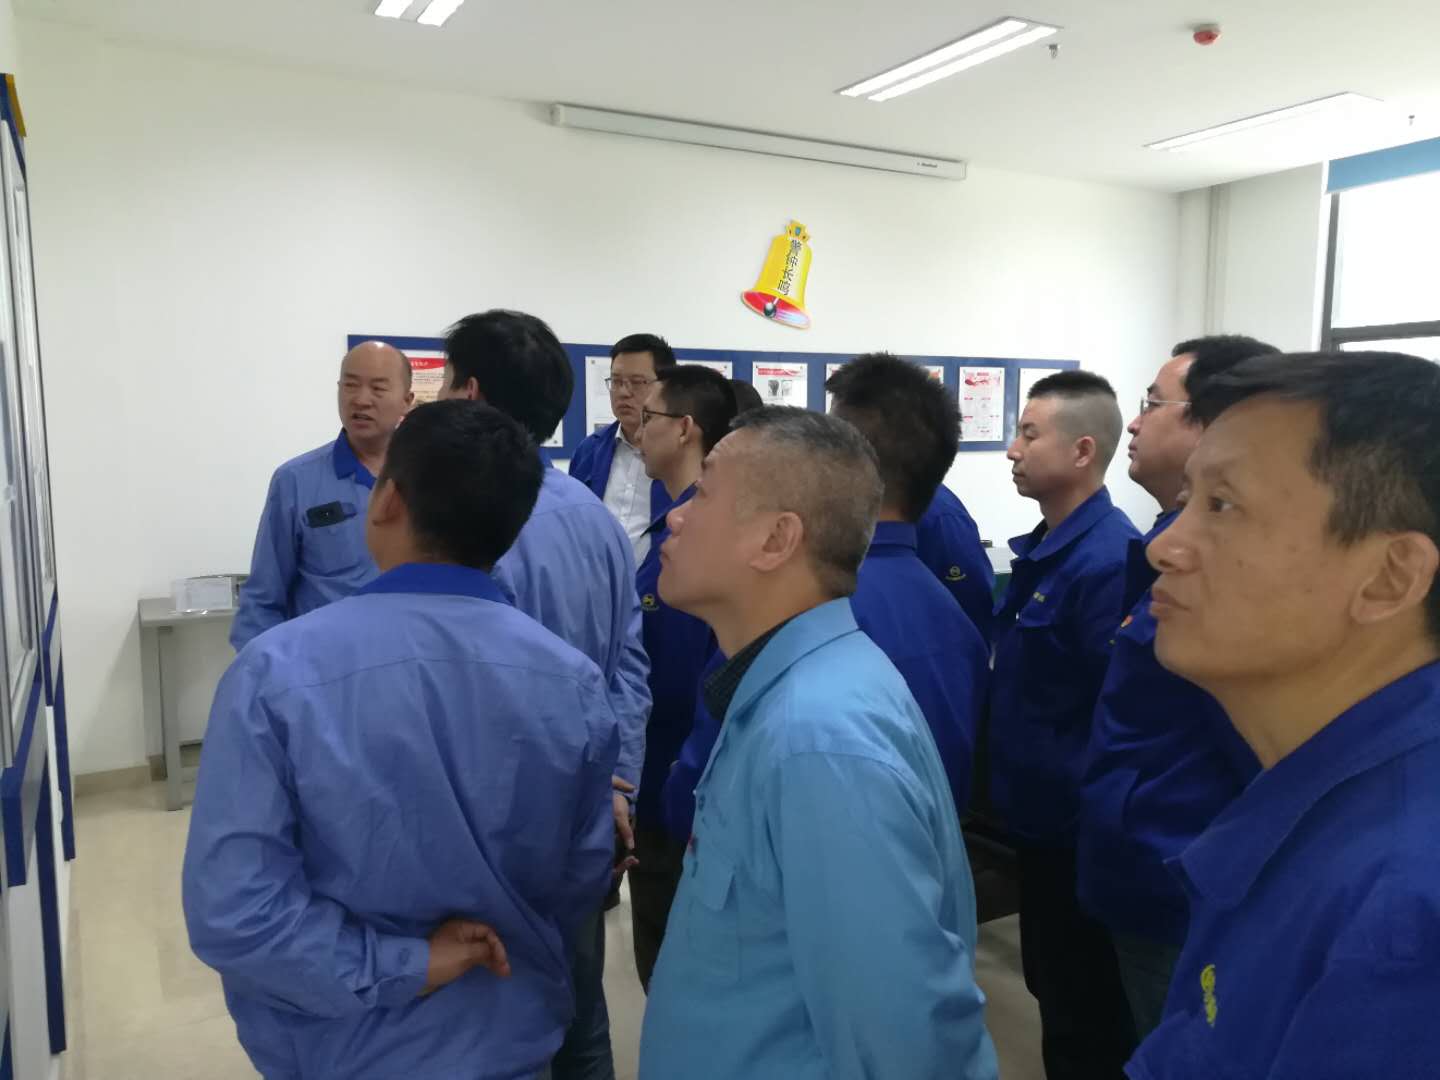 煤专公司组织全体党员参观安全警示教育室